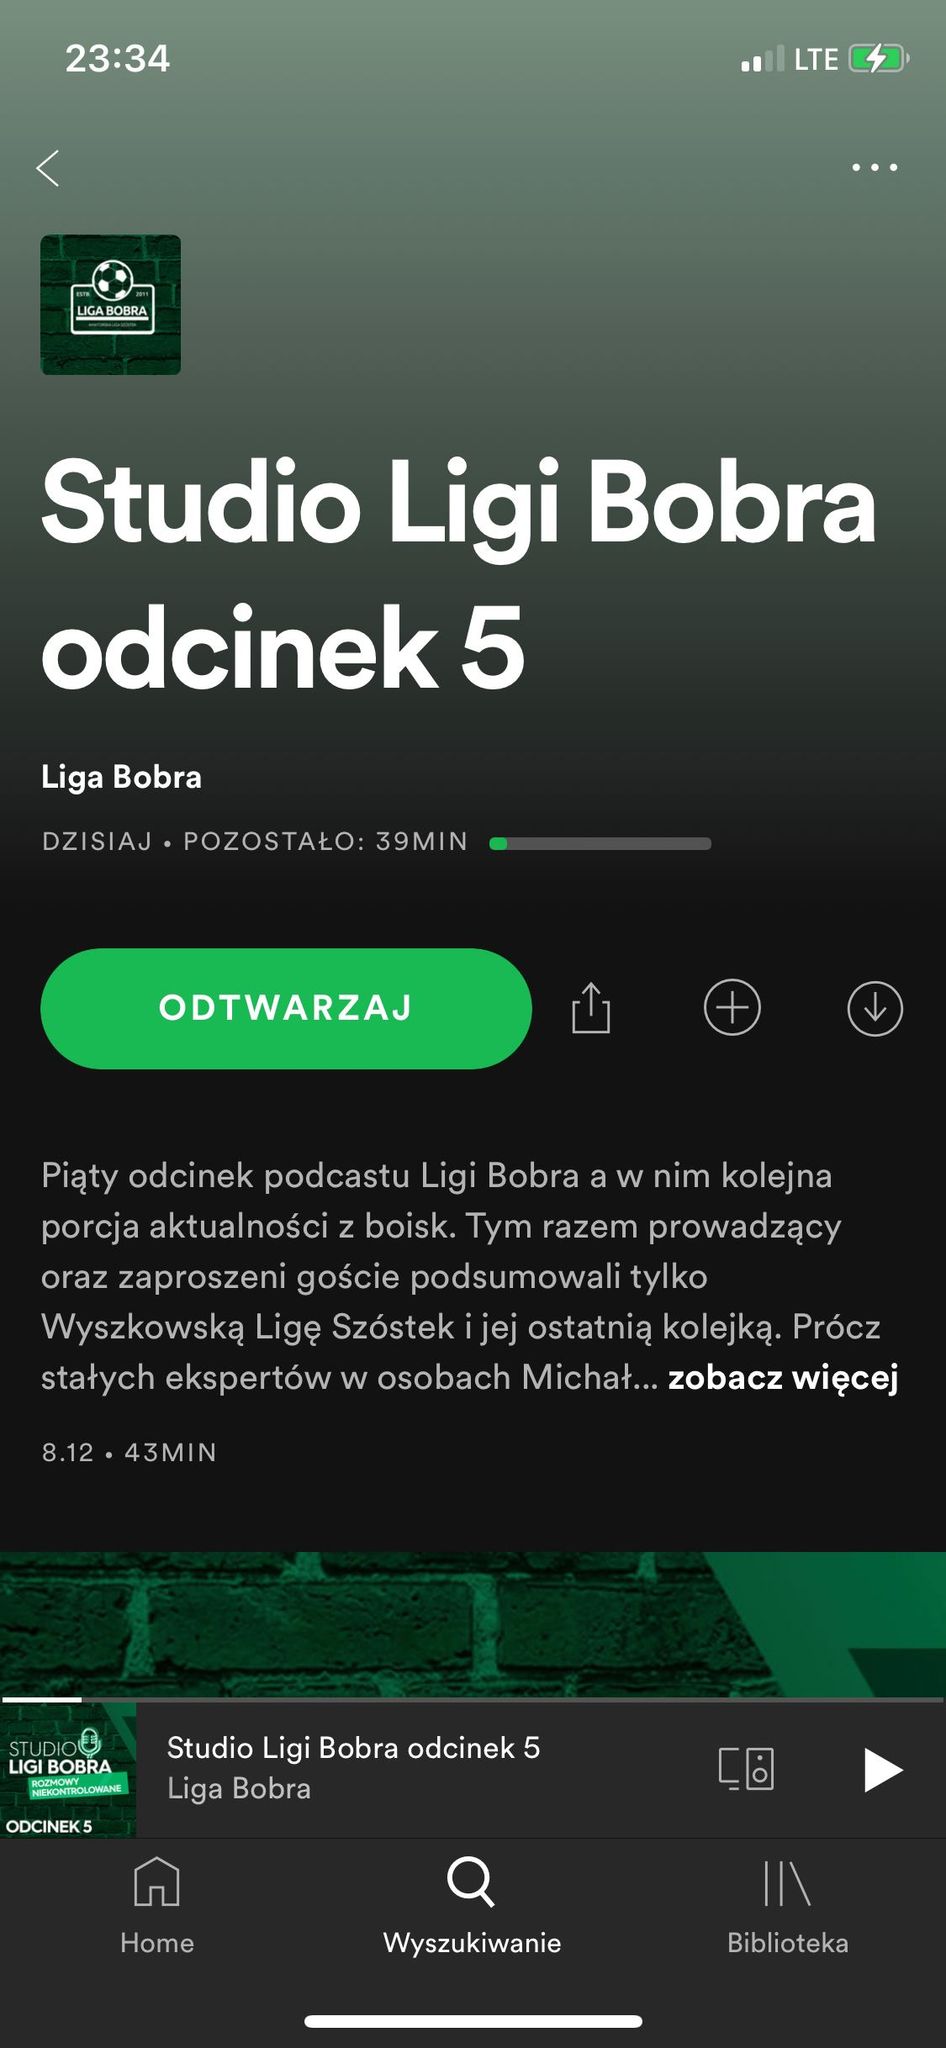 Spotify i podcast Ligi Bobra